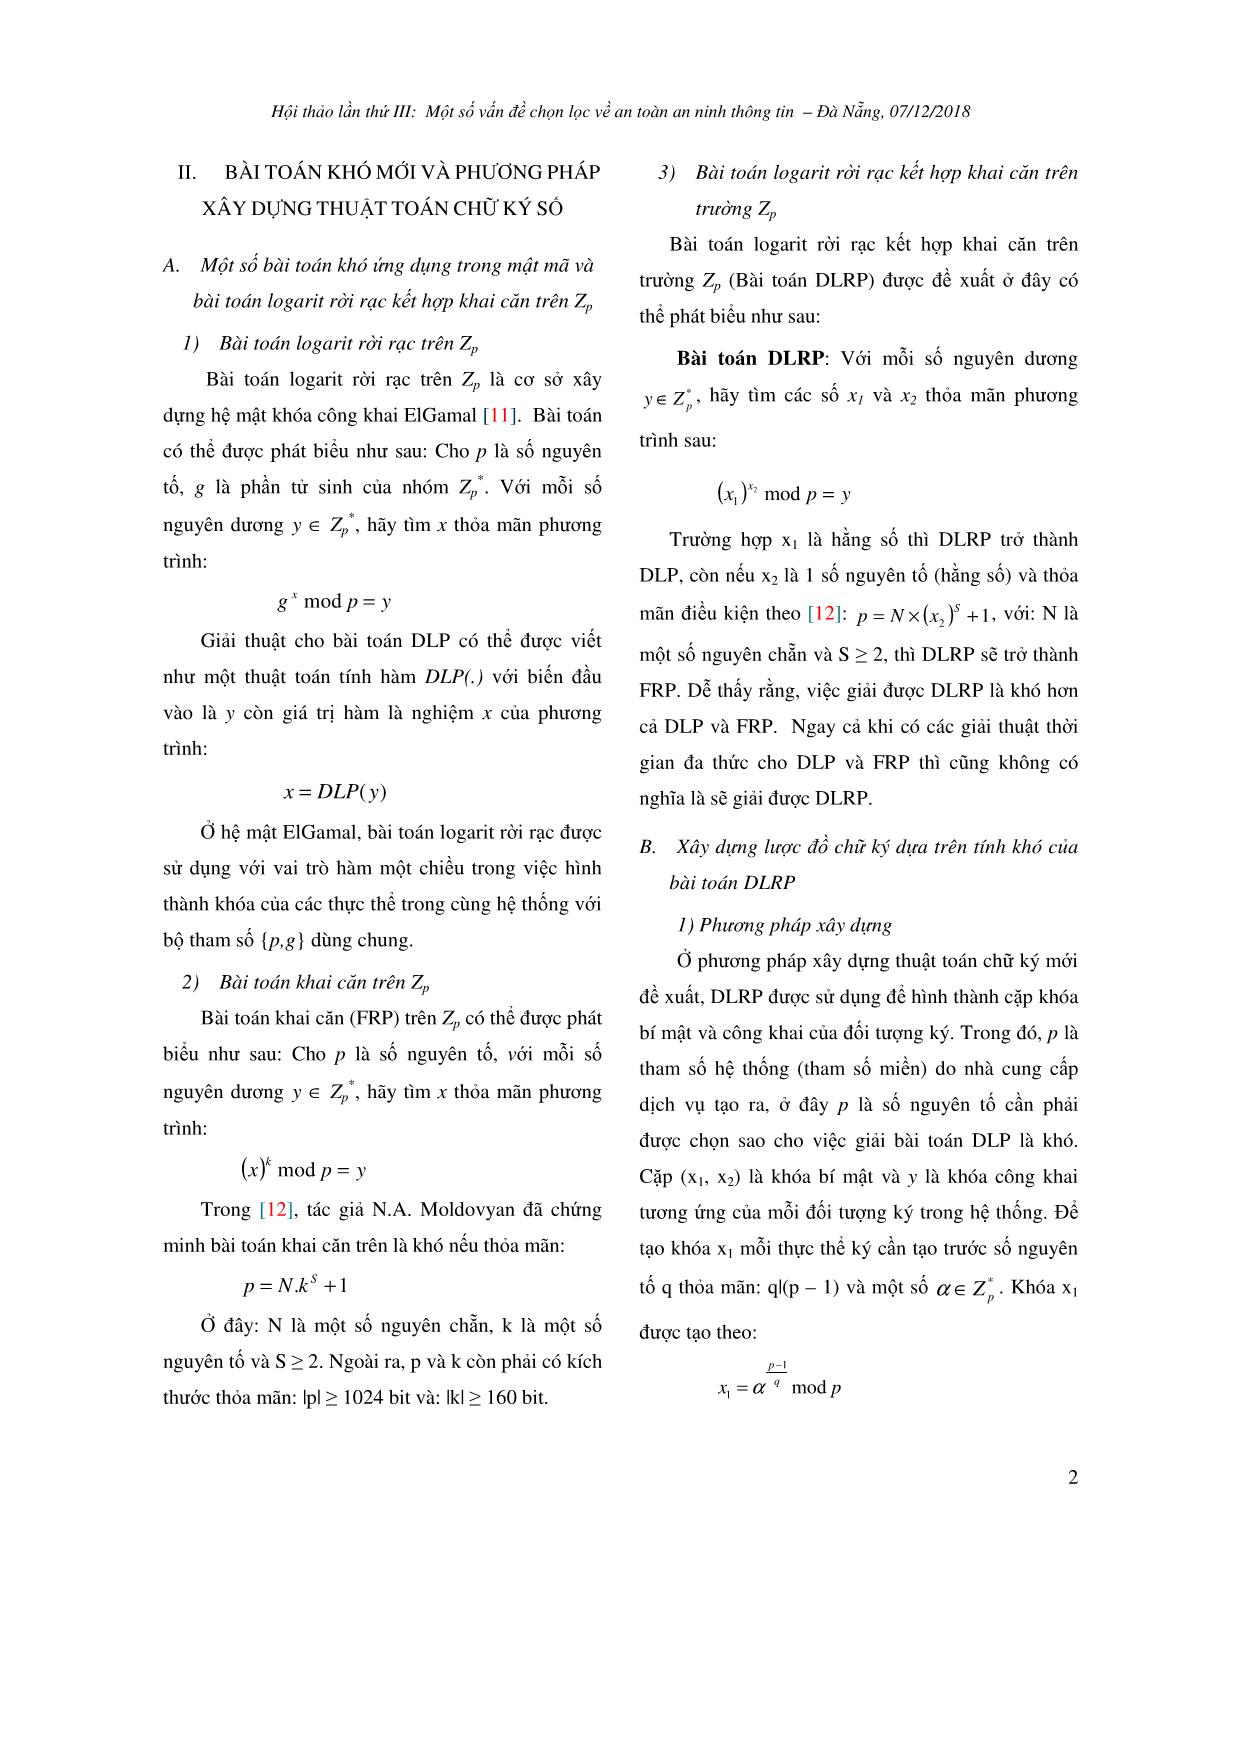 Phương pháp xây dựng thuật toán chữ ký số dựa trên một dạng bài toán khó mới trang 2